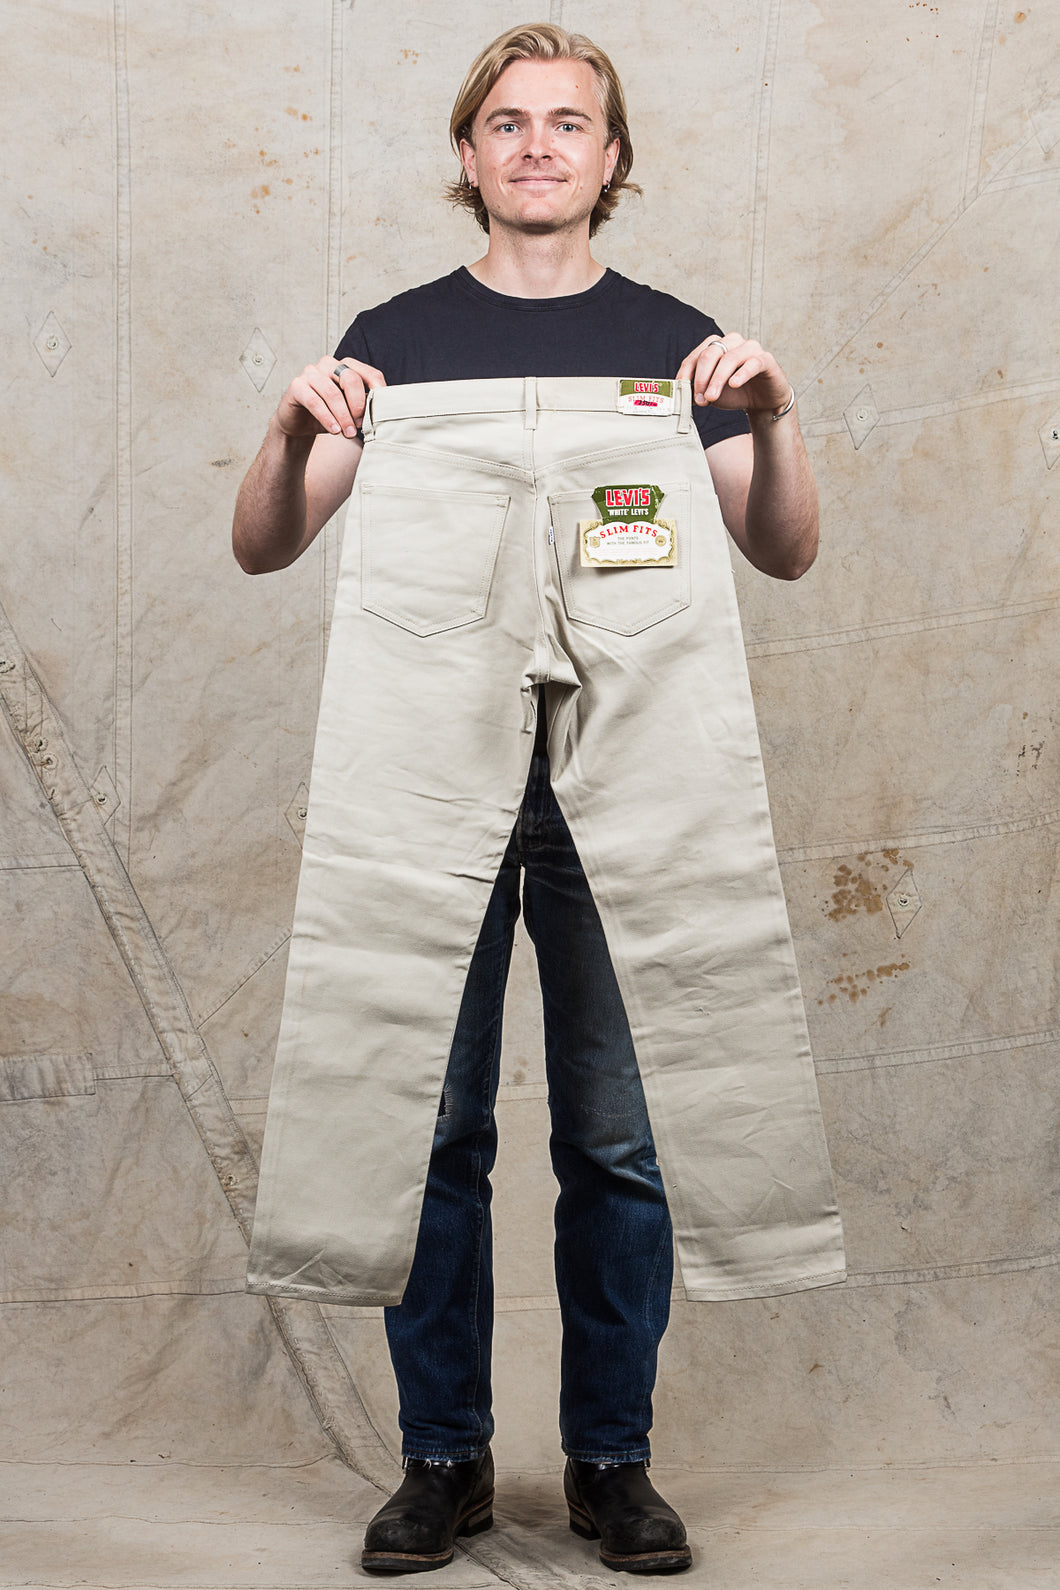 Vintage Dead Stock Levi's Big E White Slim Fit Pants – Second Sunrise